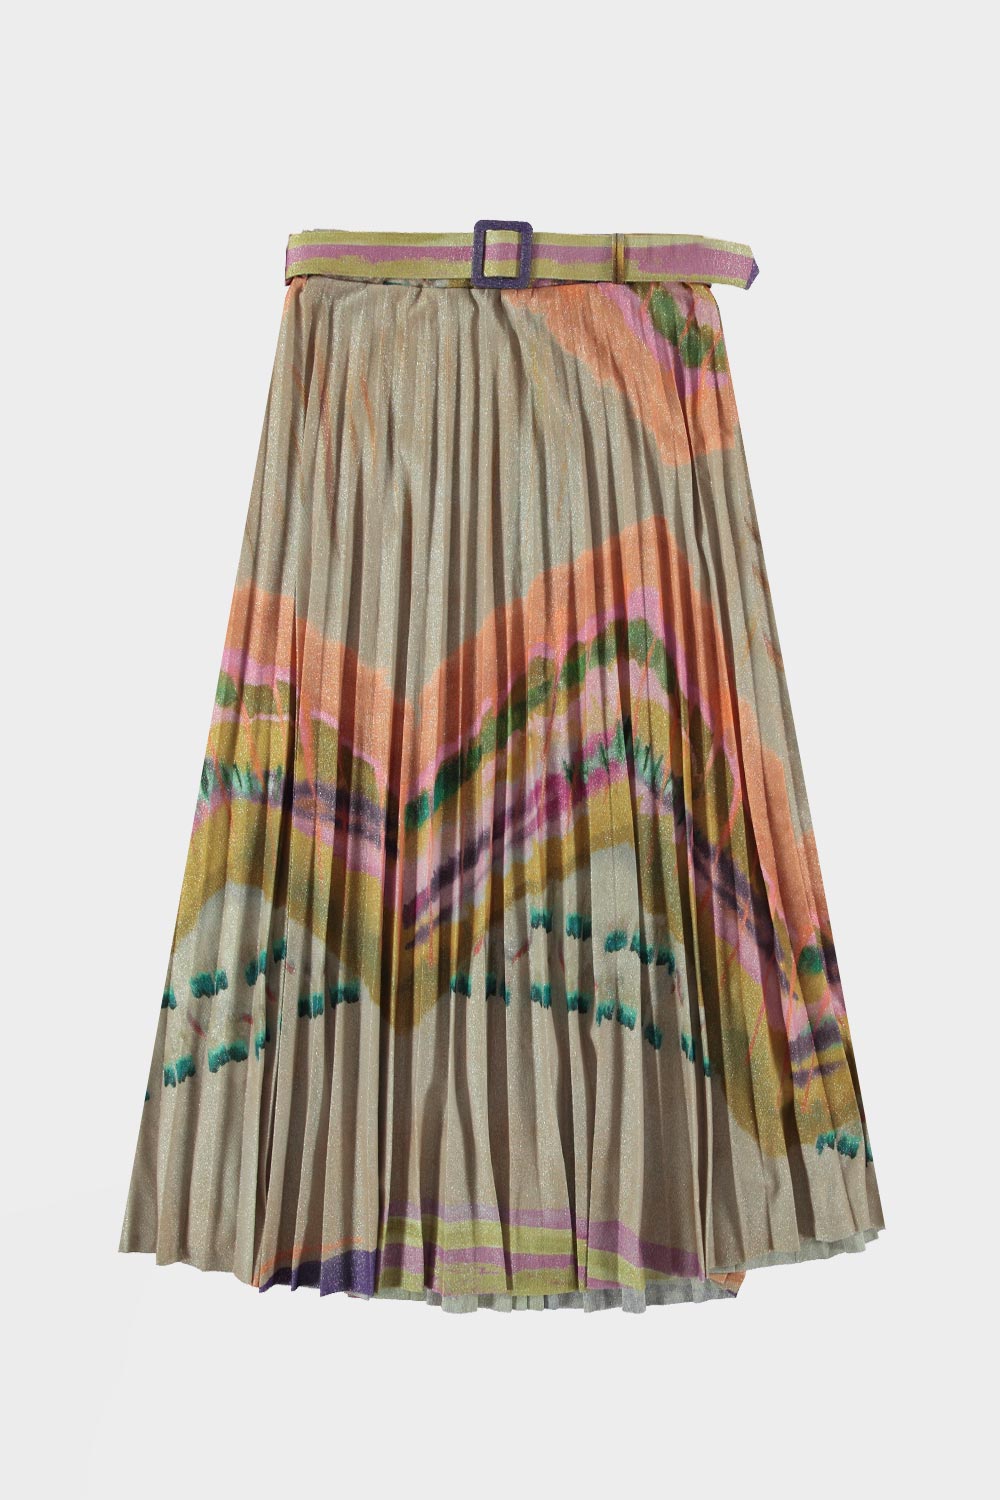 Rok met plooi Lurex is een soepel vallende wijde plissé rok met een mooi patroon in multicolor. Combineer deze mooie rok met een camel effen kleur top. Deze rok is verkrijgbaar in verschillende kleuren: Paars, Groen, Beige.  Rok is one size, draagbaar tot maat 40